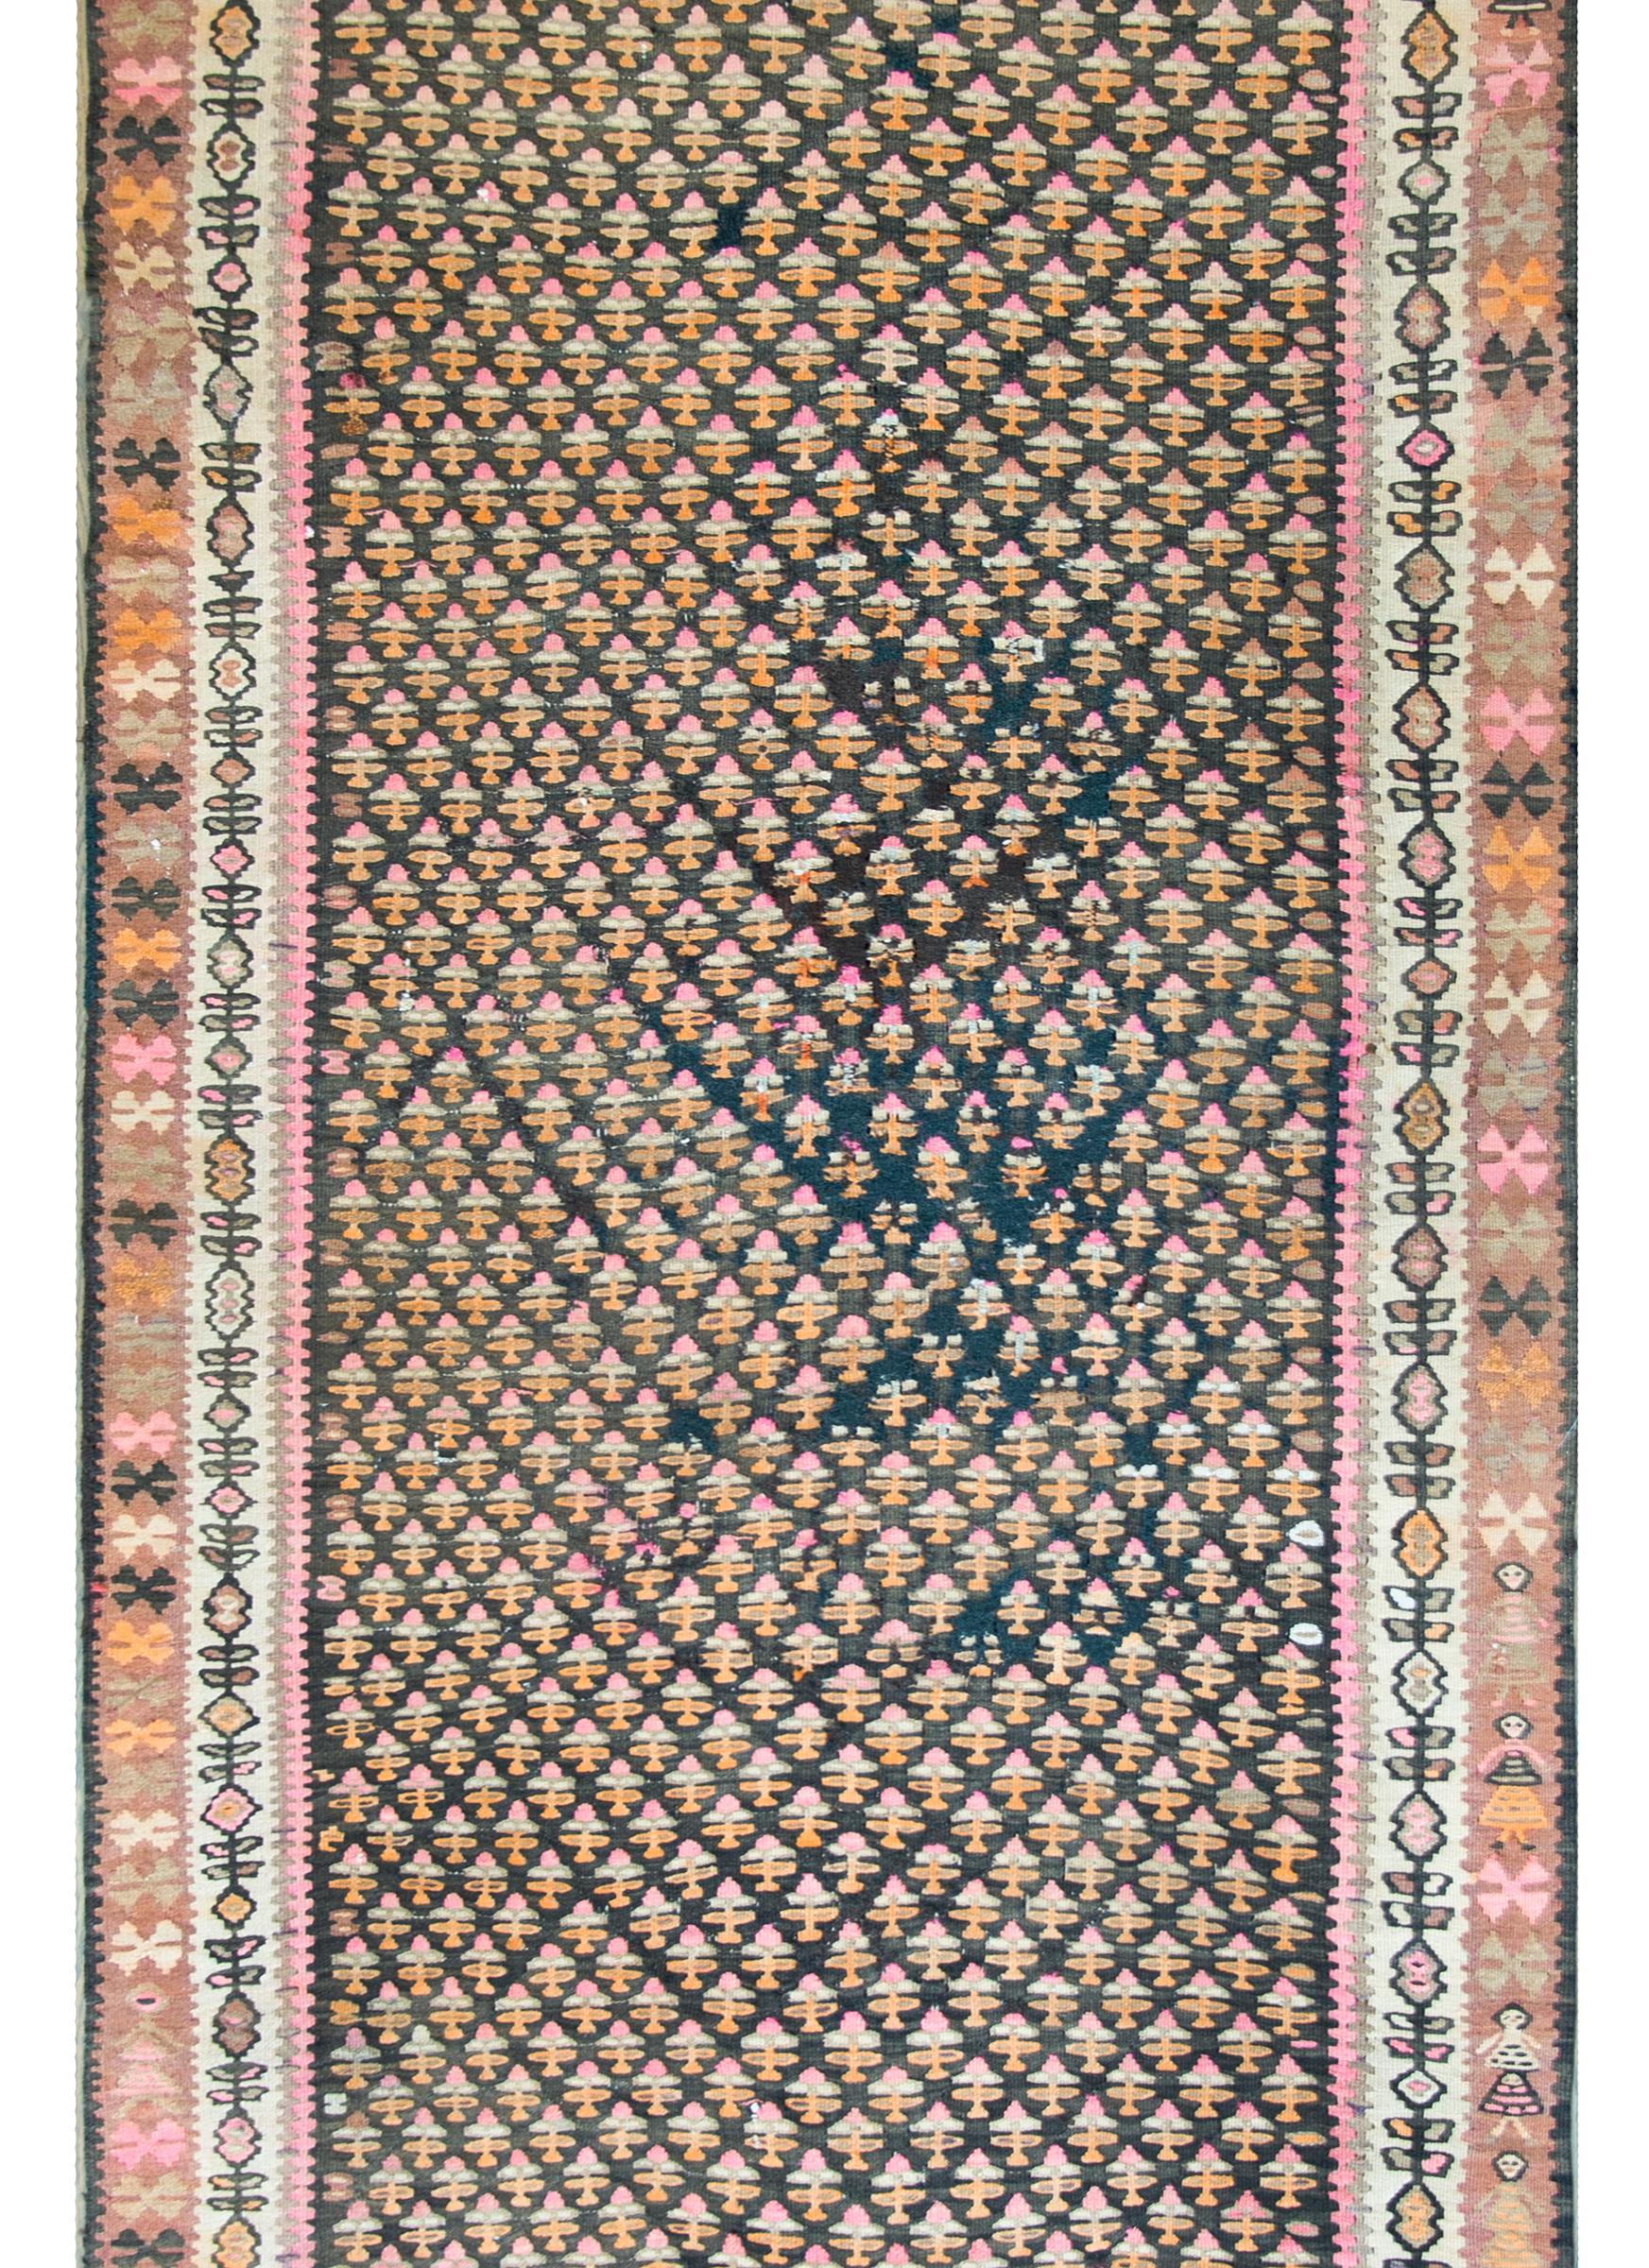 Ein unglaublicher kurdischer Kelim-Teppich aus dem frühen 20. Jahrhundert mit einem stilisierten Allover-Lebensbaum-Muster aus rosa, orangefarbener und cremefarbener Wolle auf schwarzem Grund, eingerahmt von einer komplexen Bordüre mit mehreren